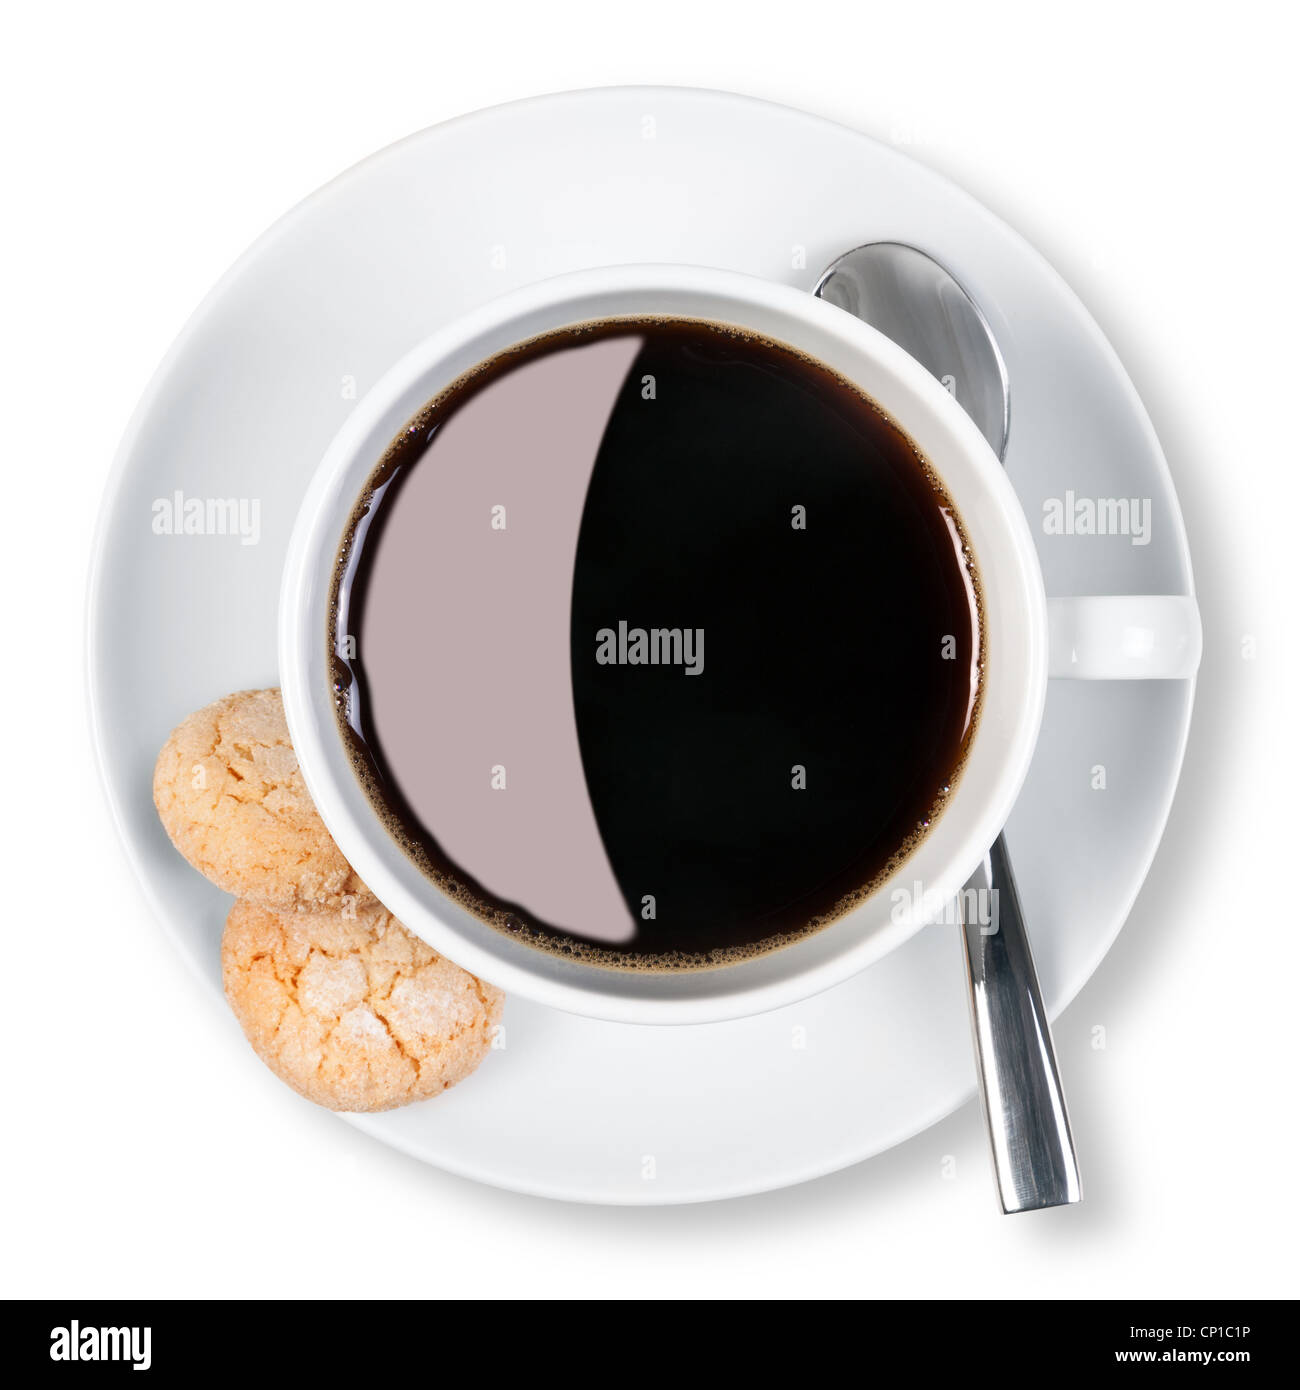 Fotografía aérea de una taza de café negro con dos amaretti galletas en el lateral, aislado en un fondo blanco. Foto de stock